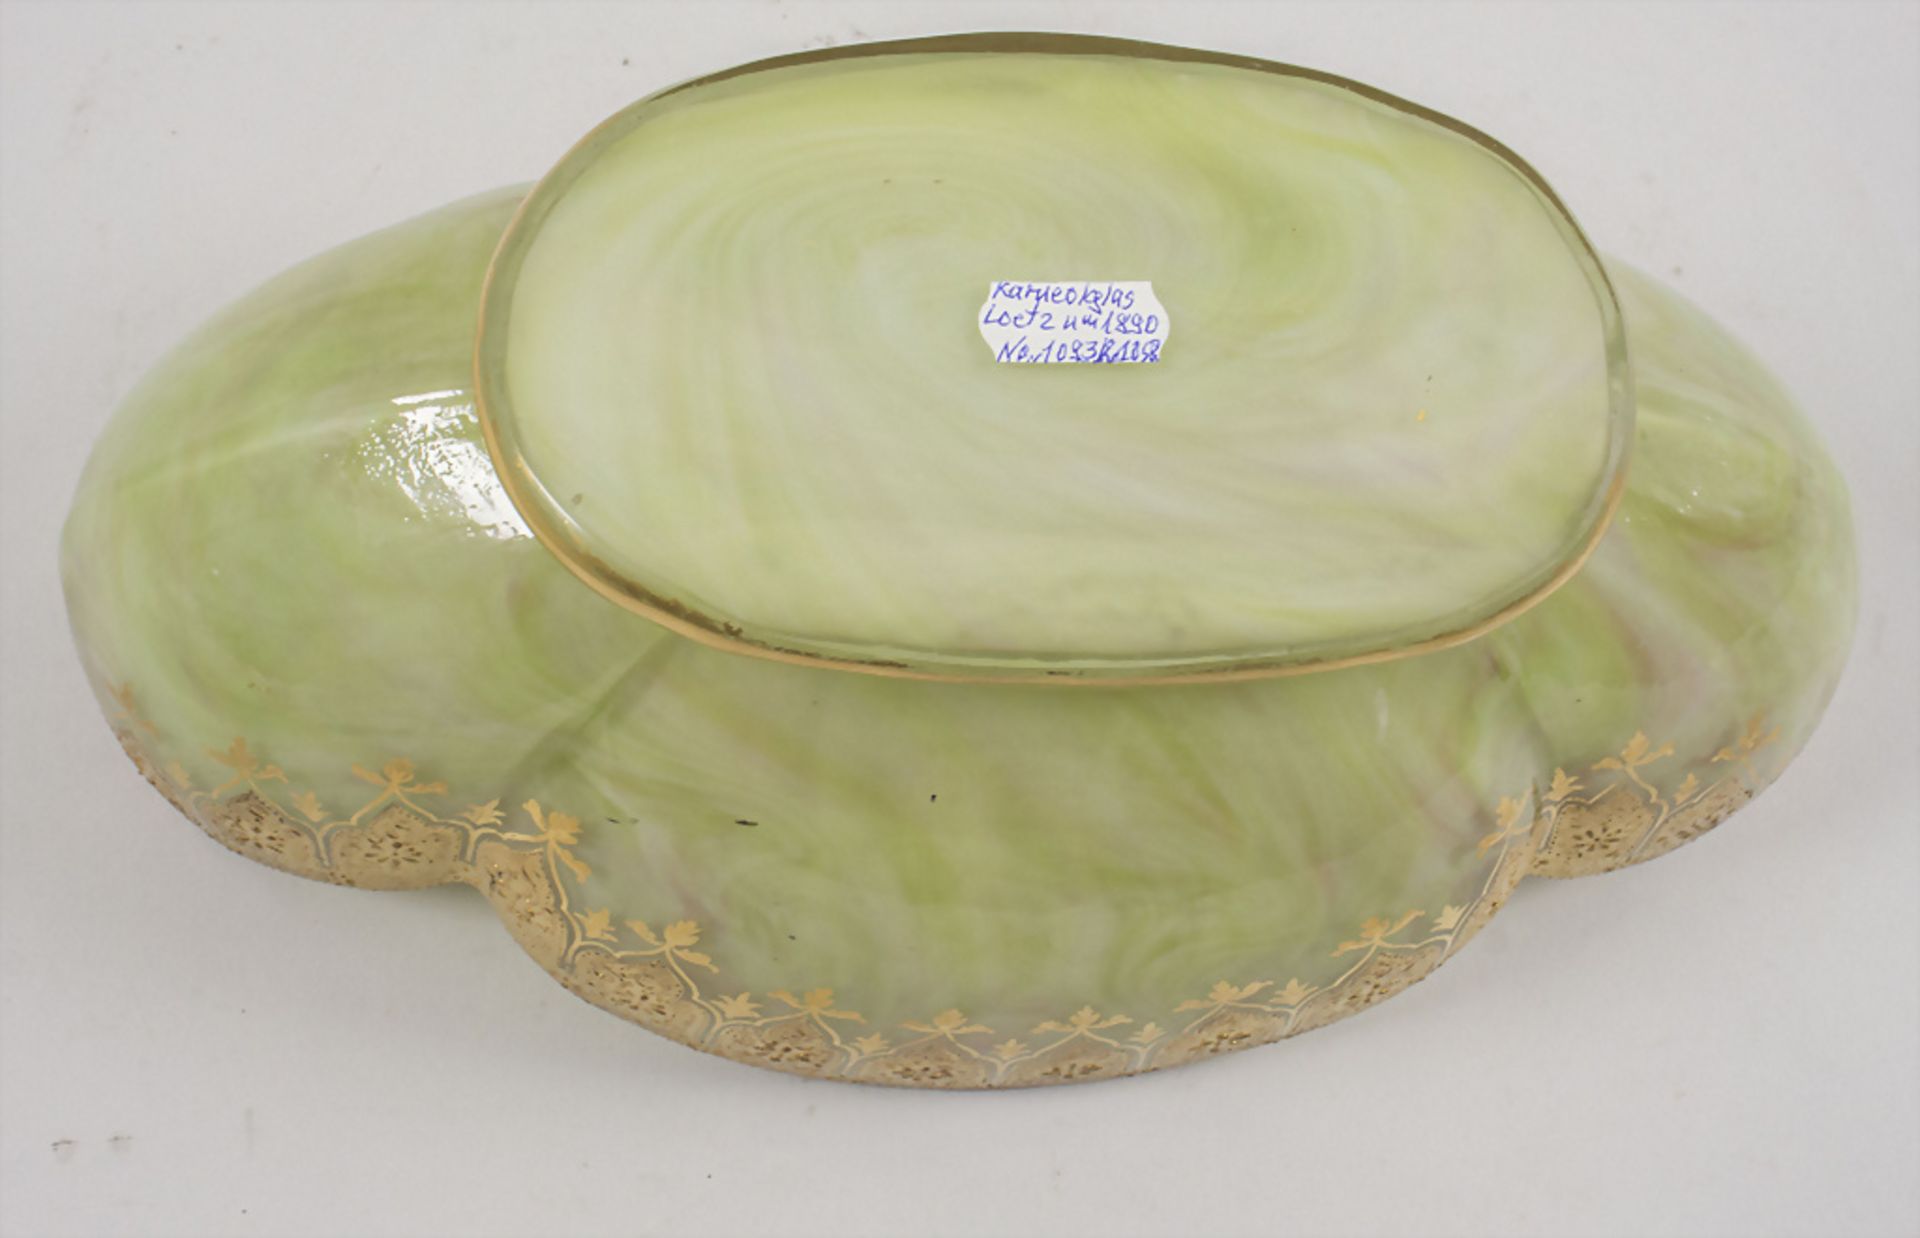 Große Jugendstil Karneol-Schale / A large glass bowl, Johann Loetz Witwe, Klostermühle, um 1890 - Bild 5 aus 7